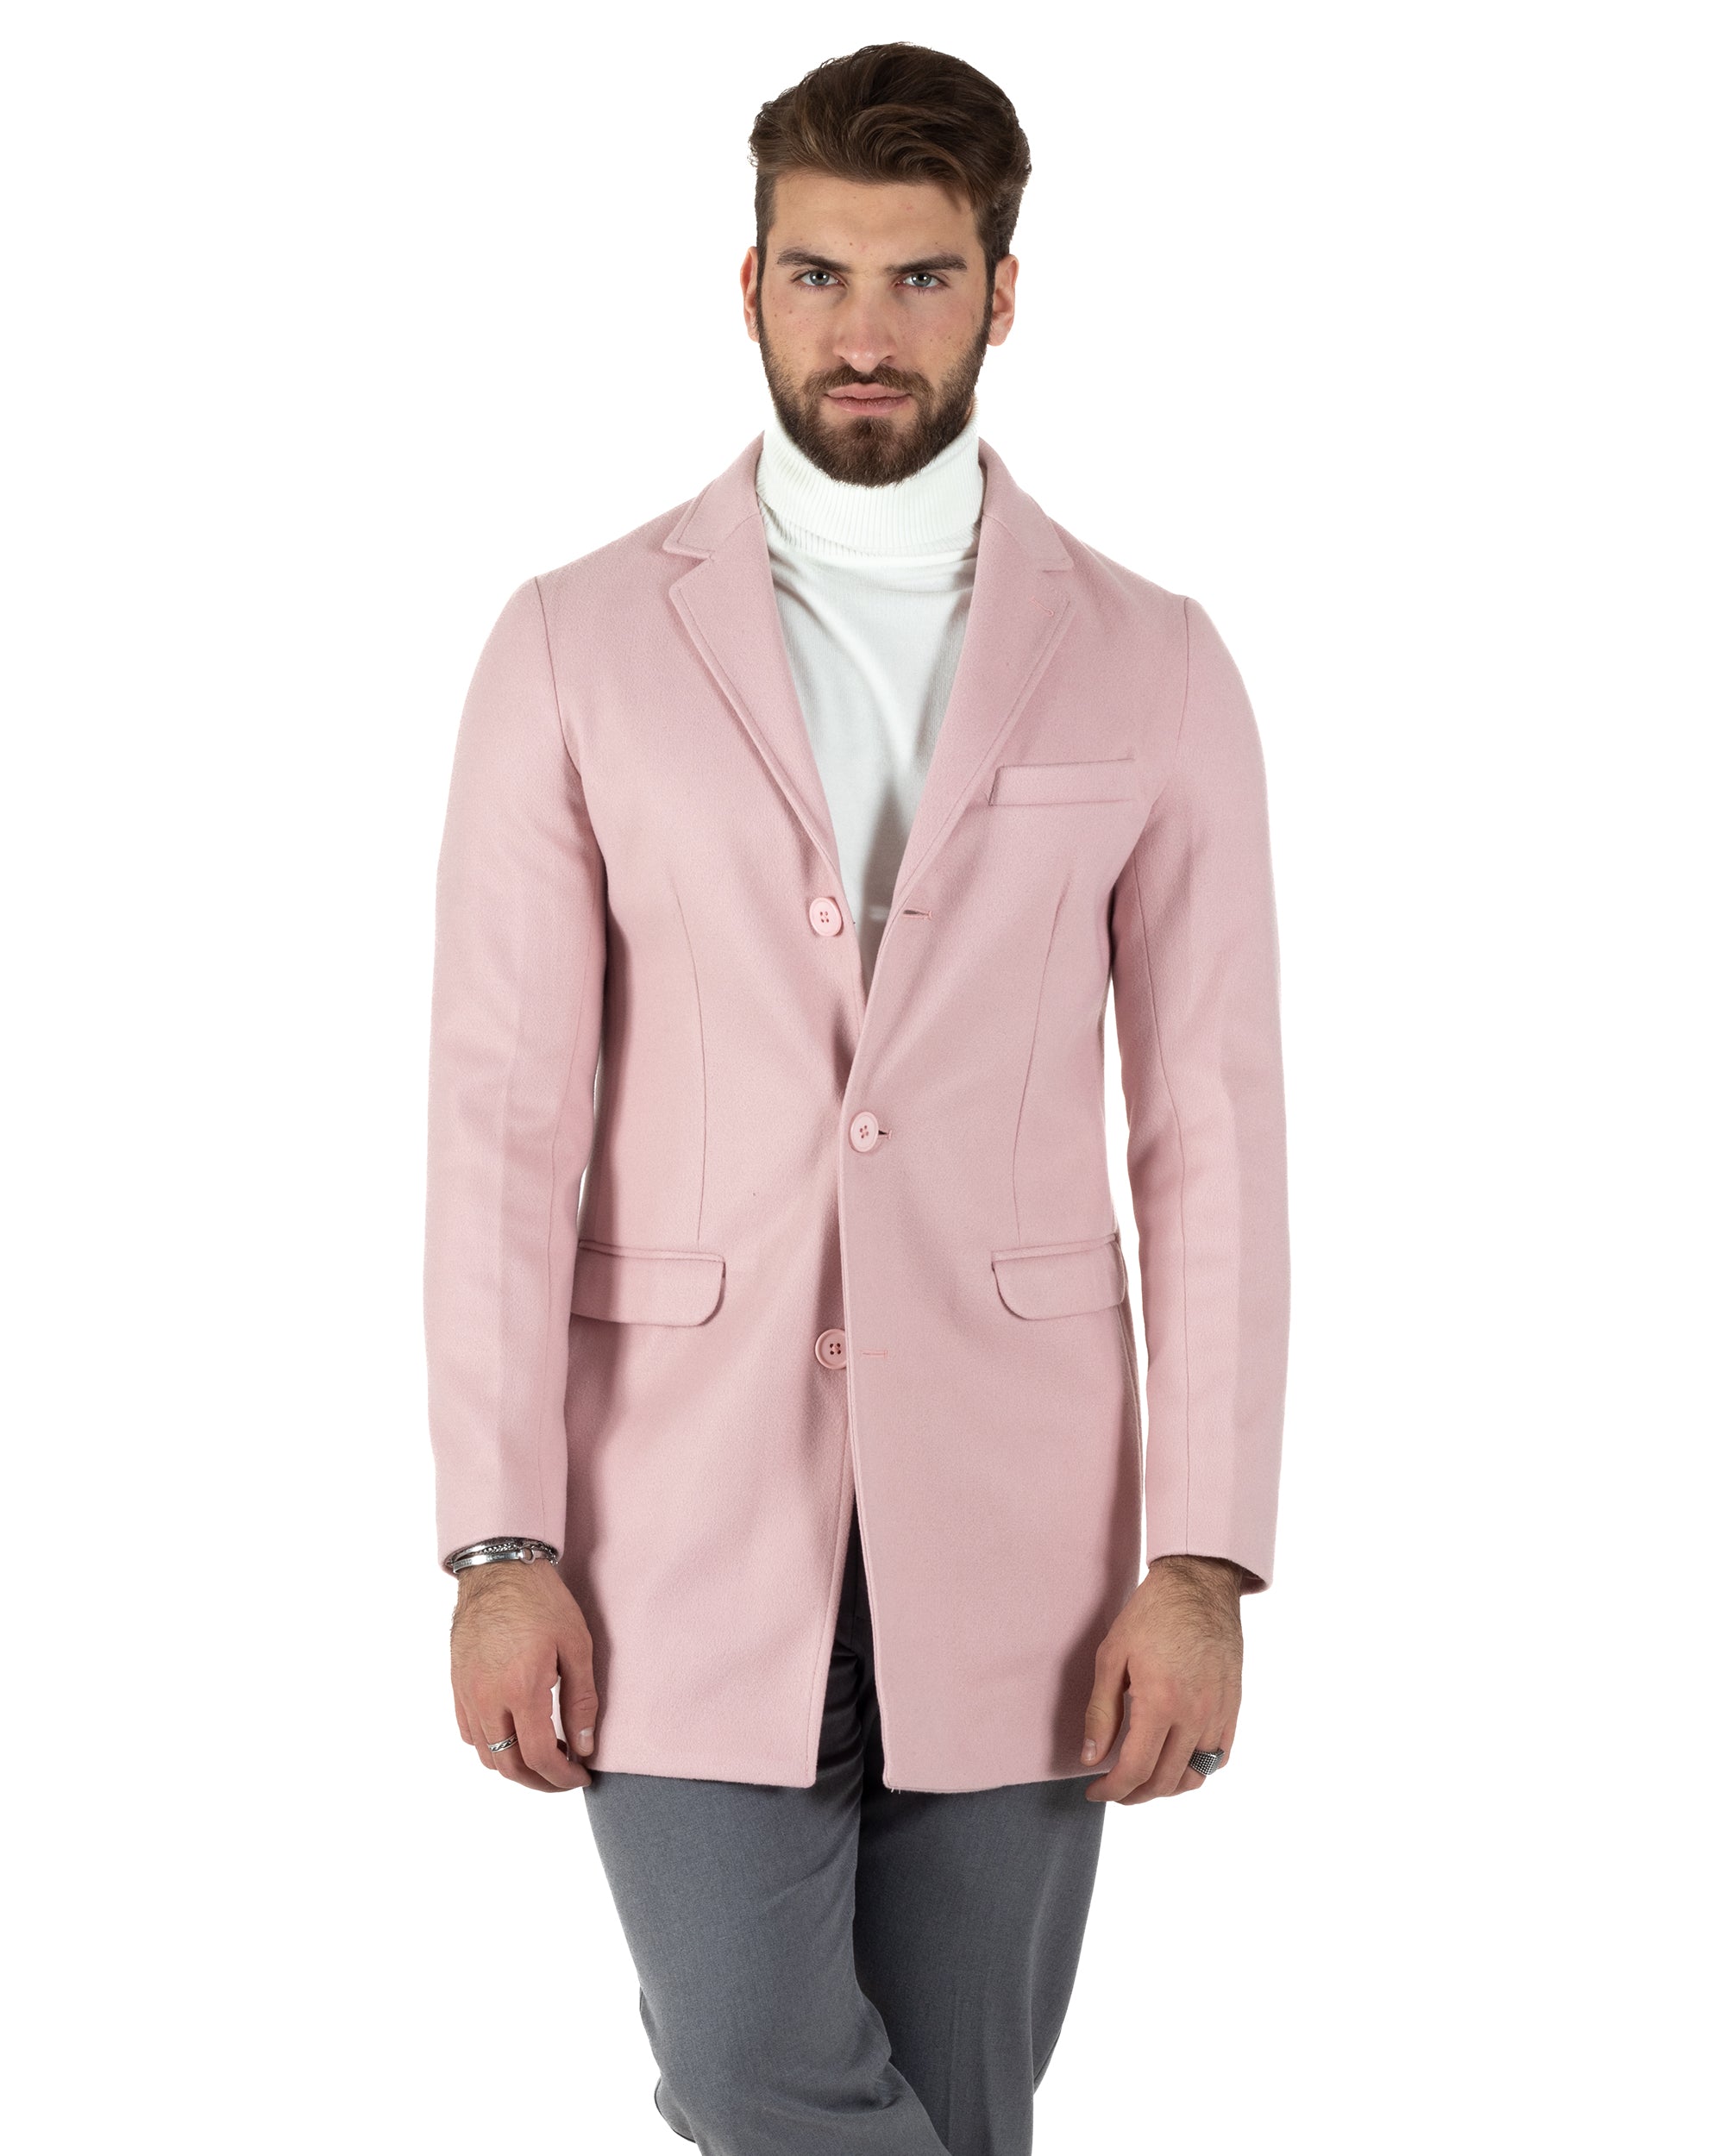 Cappotto Monopetto Uomo Giacca Colletto Reverse Giaccone Tinta Unita Rosa Baronetto Elegante GIOSAL-CO1020A